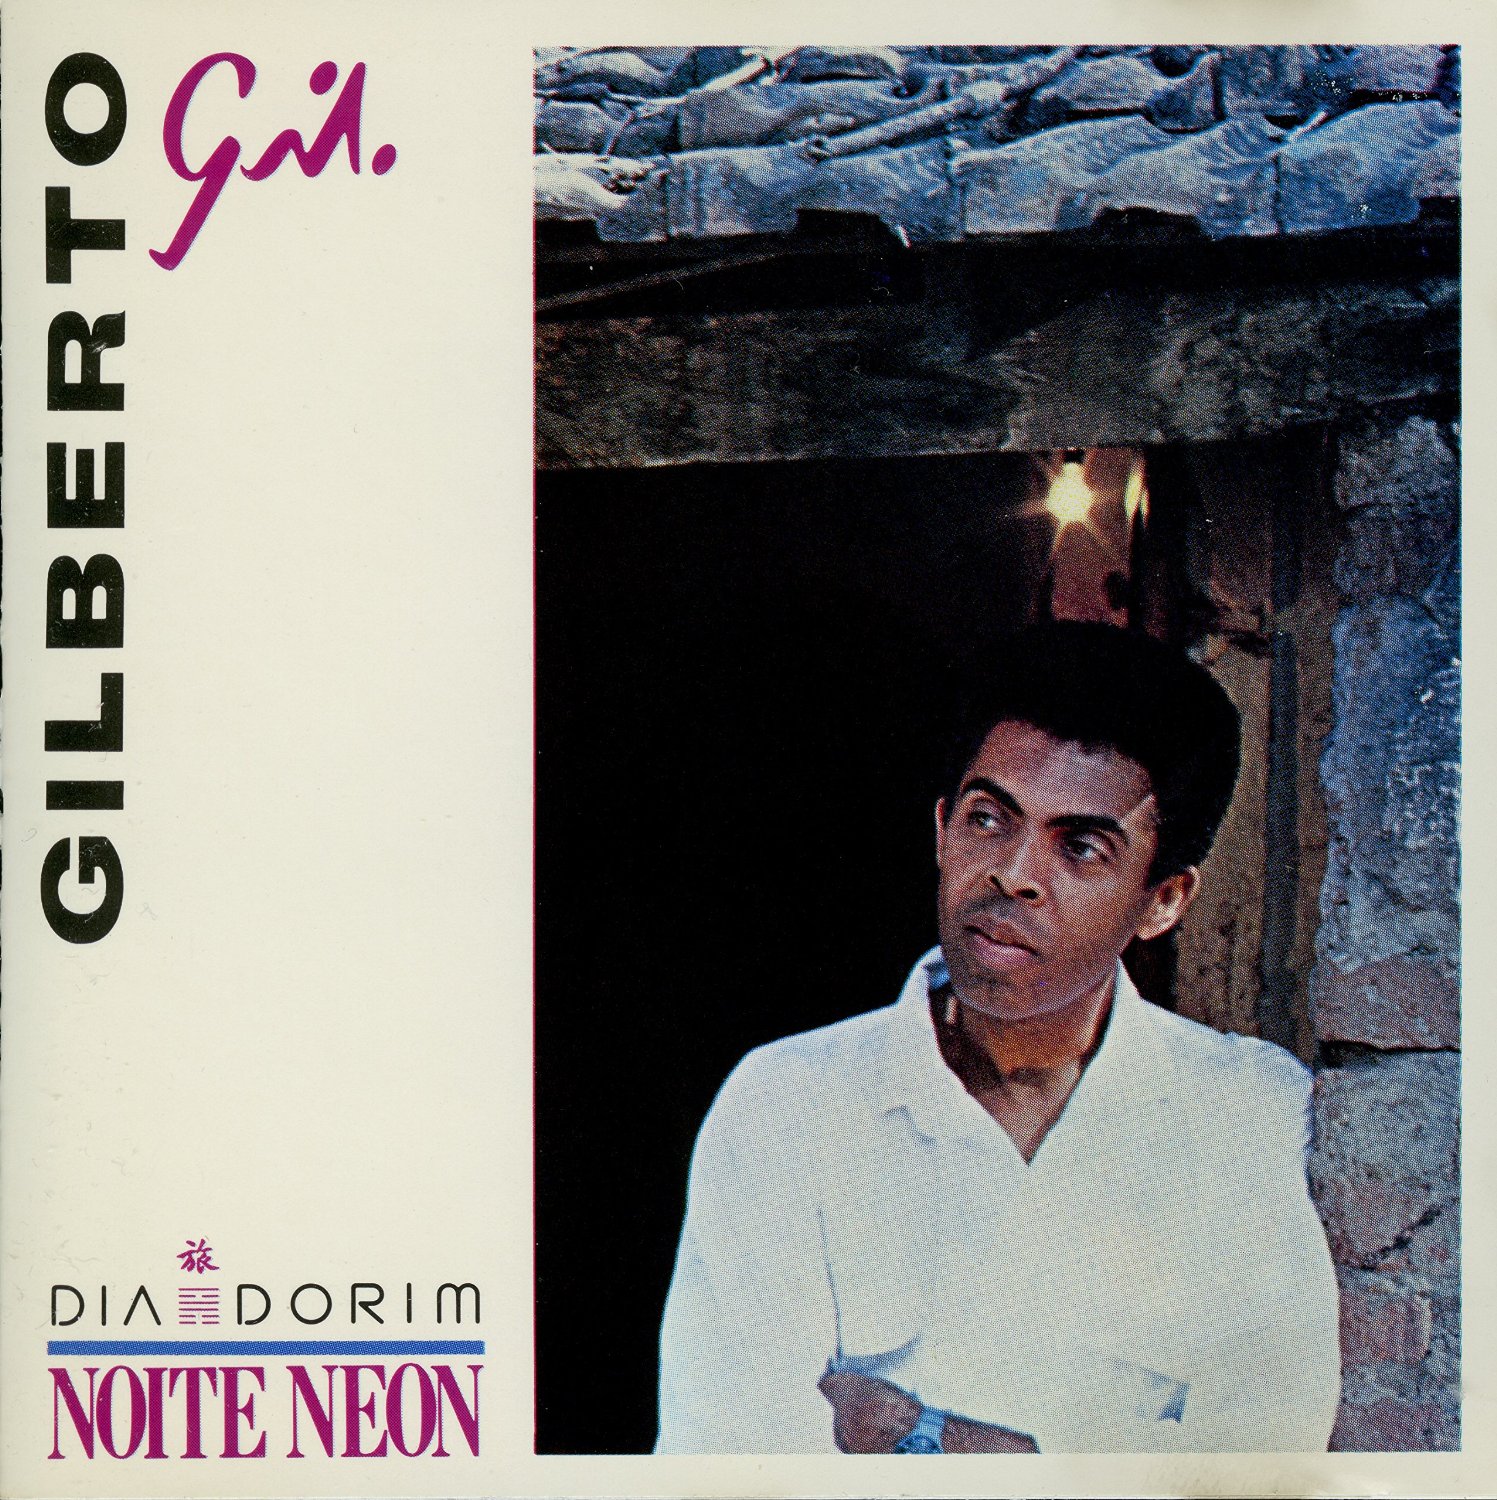  Trecho de "Casinha Feliz", composição e interpretação de Gilberto Gil